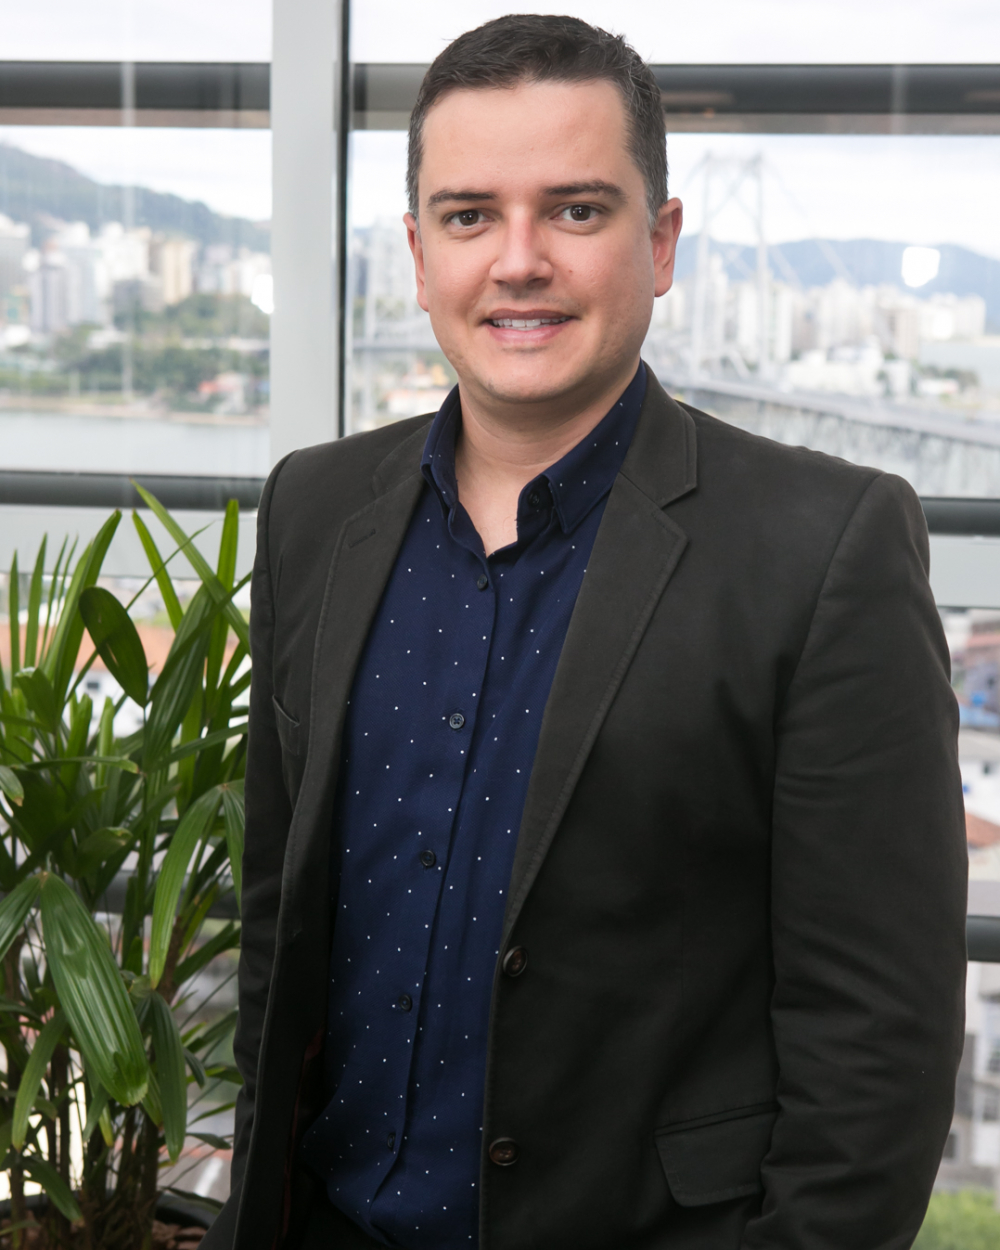 InvestSmart XP inaugura em Florianópolis e será o maior escritório de investimentos de SC